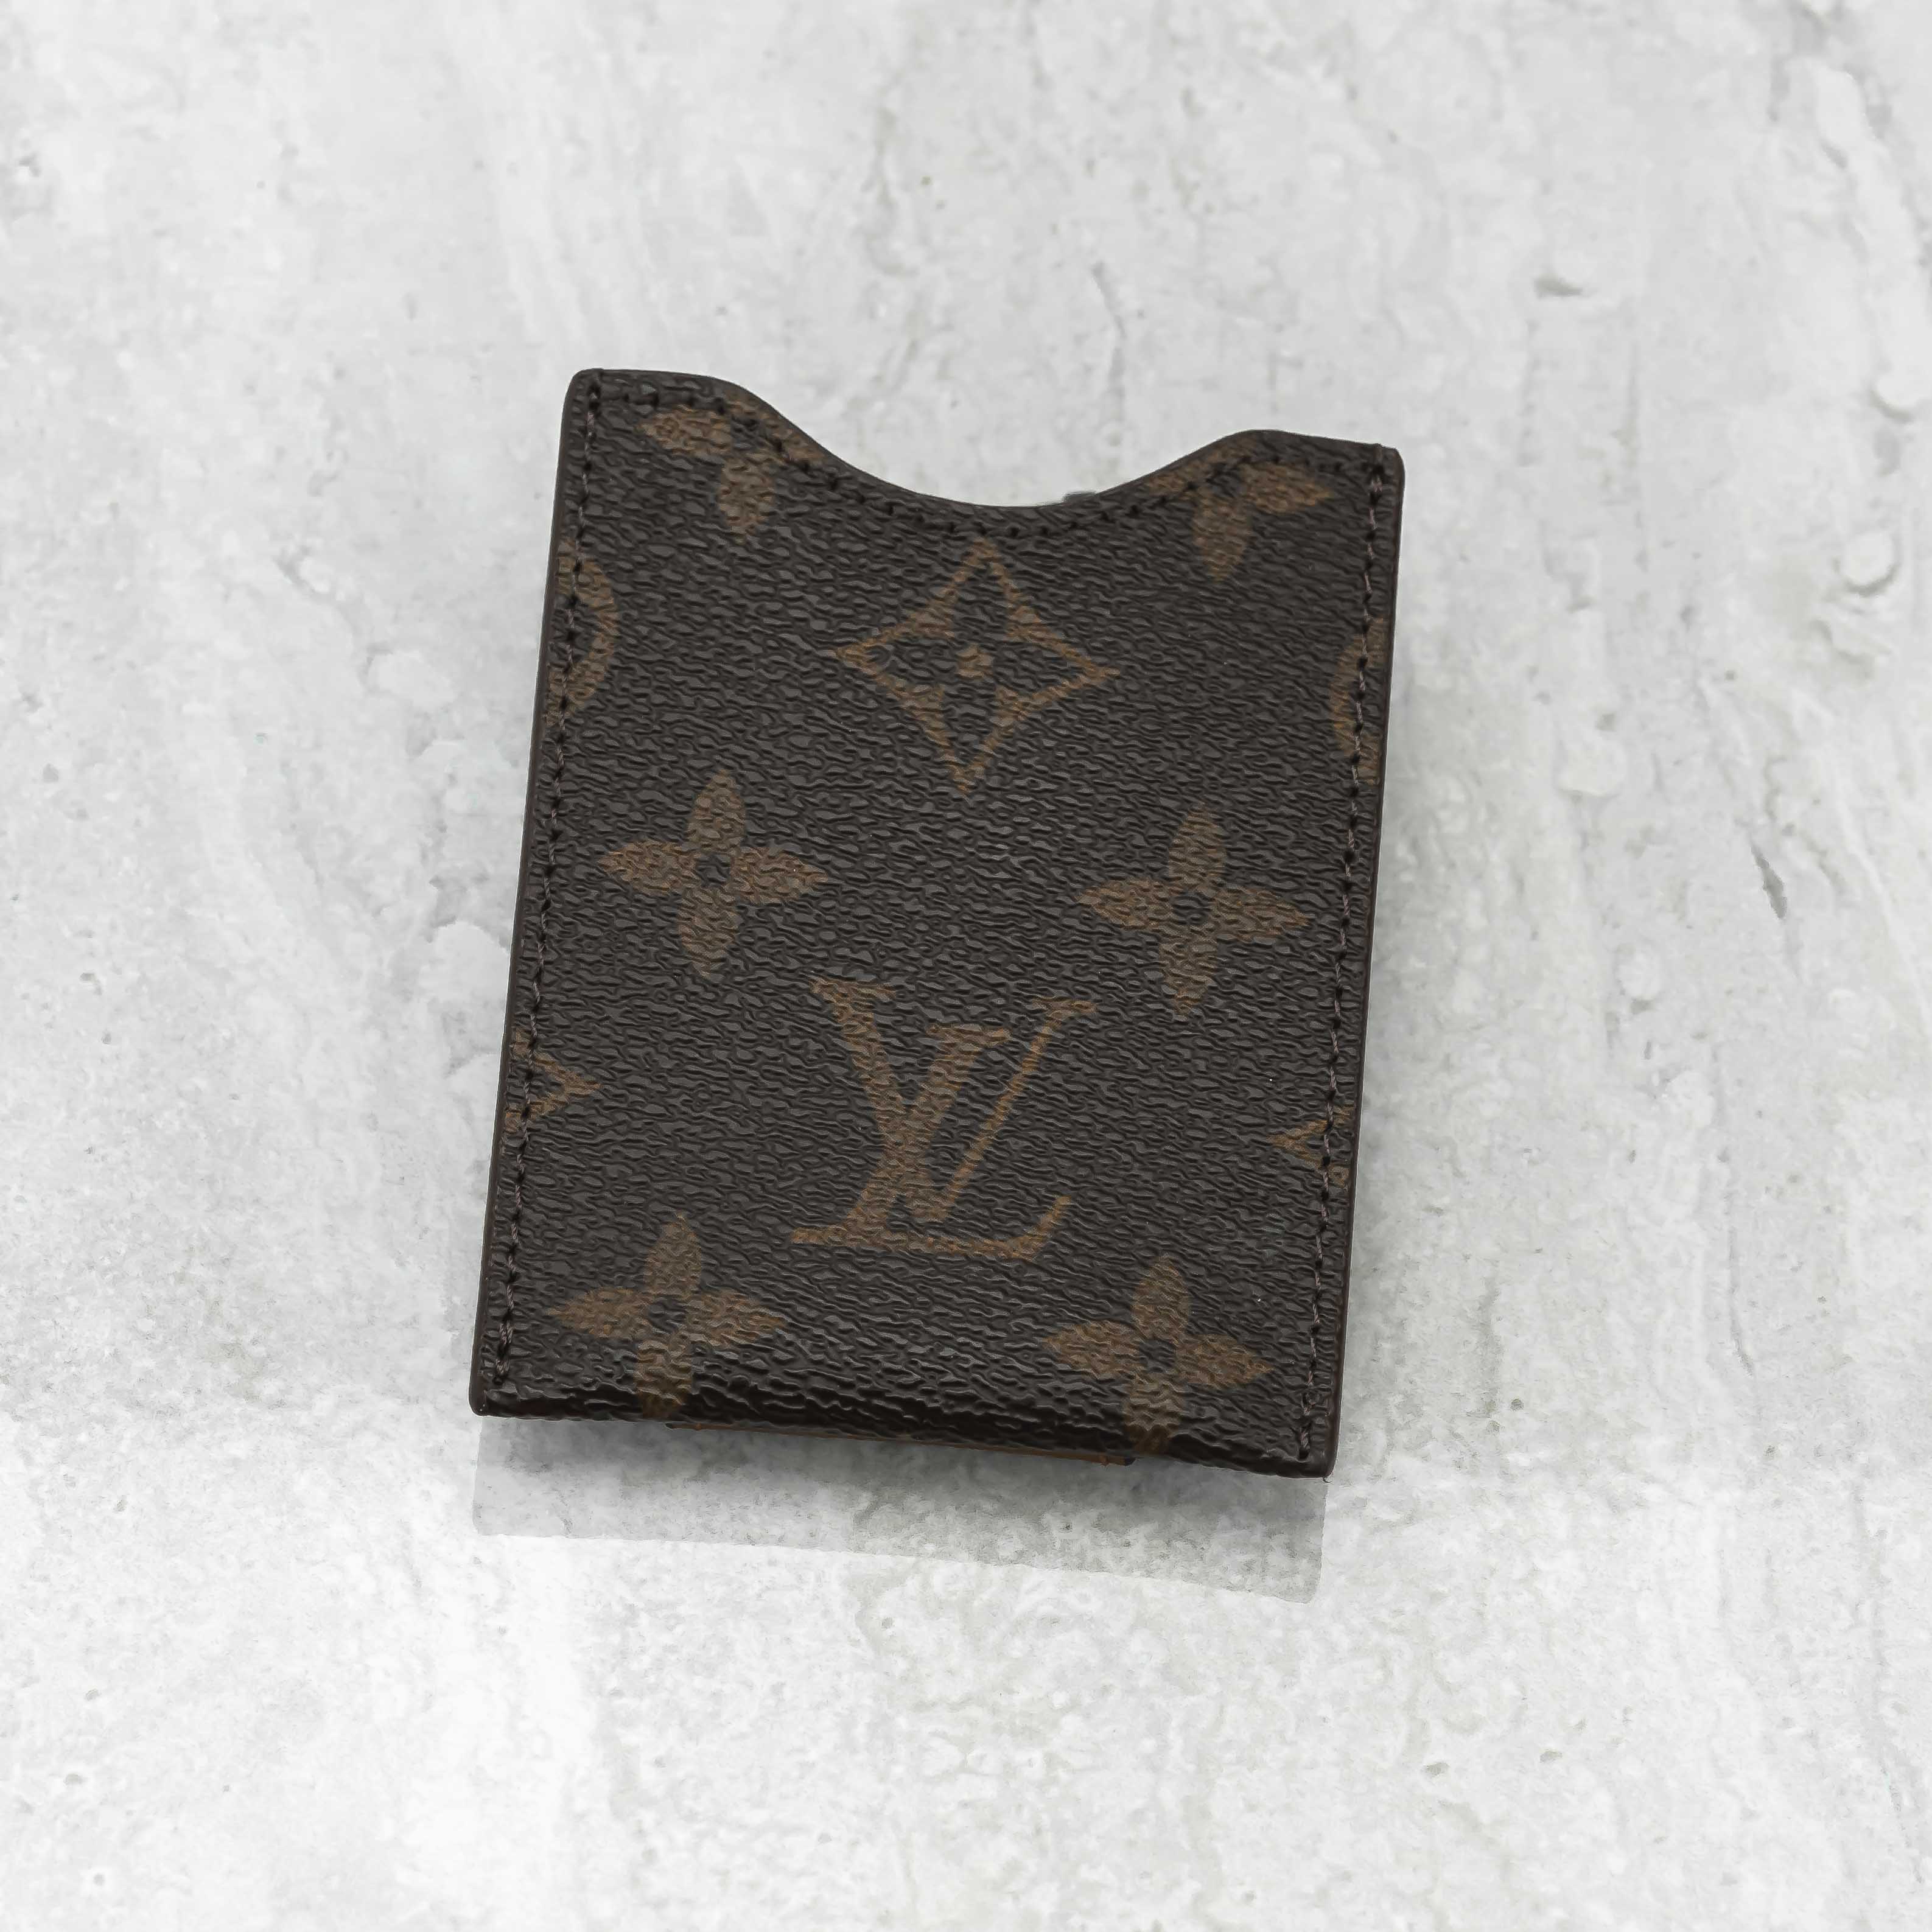 A money clip, upcycling Louis Vuitton!